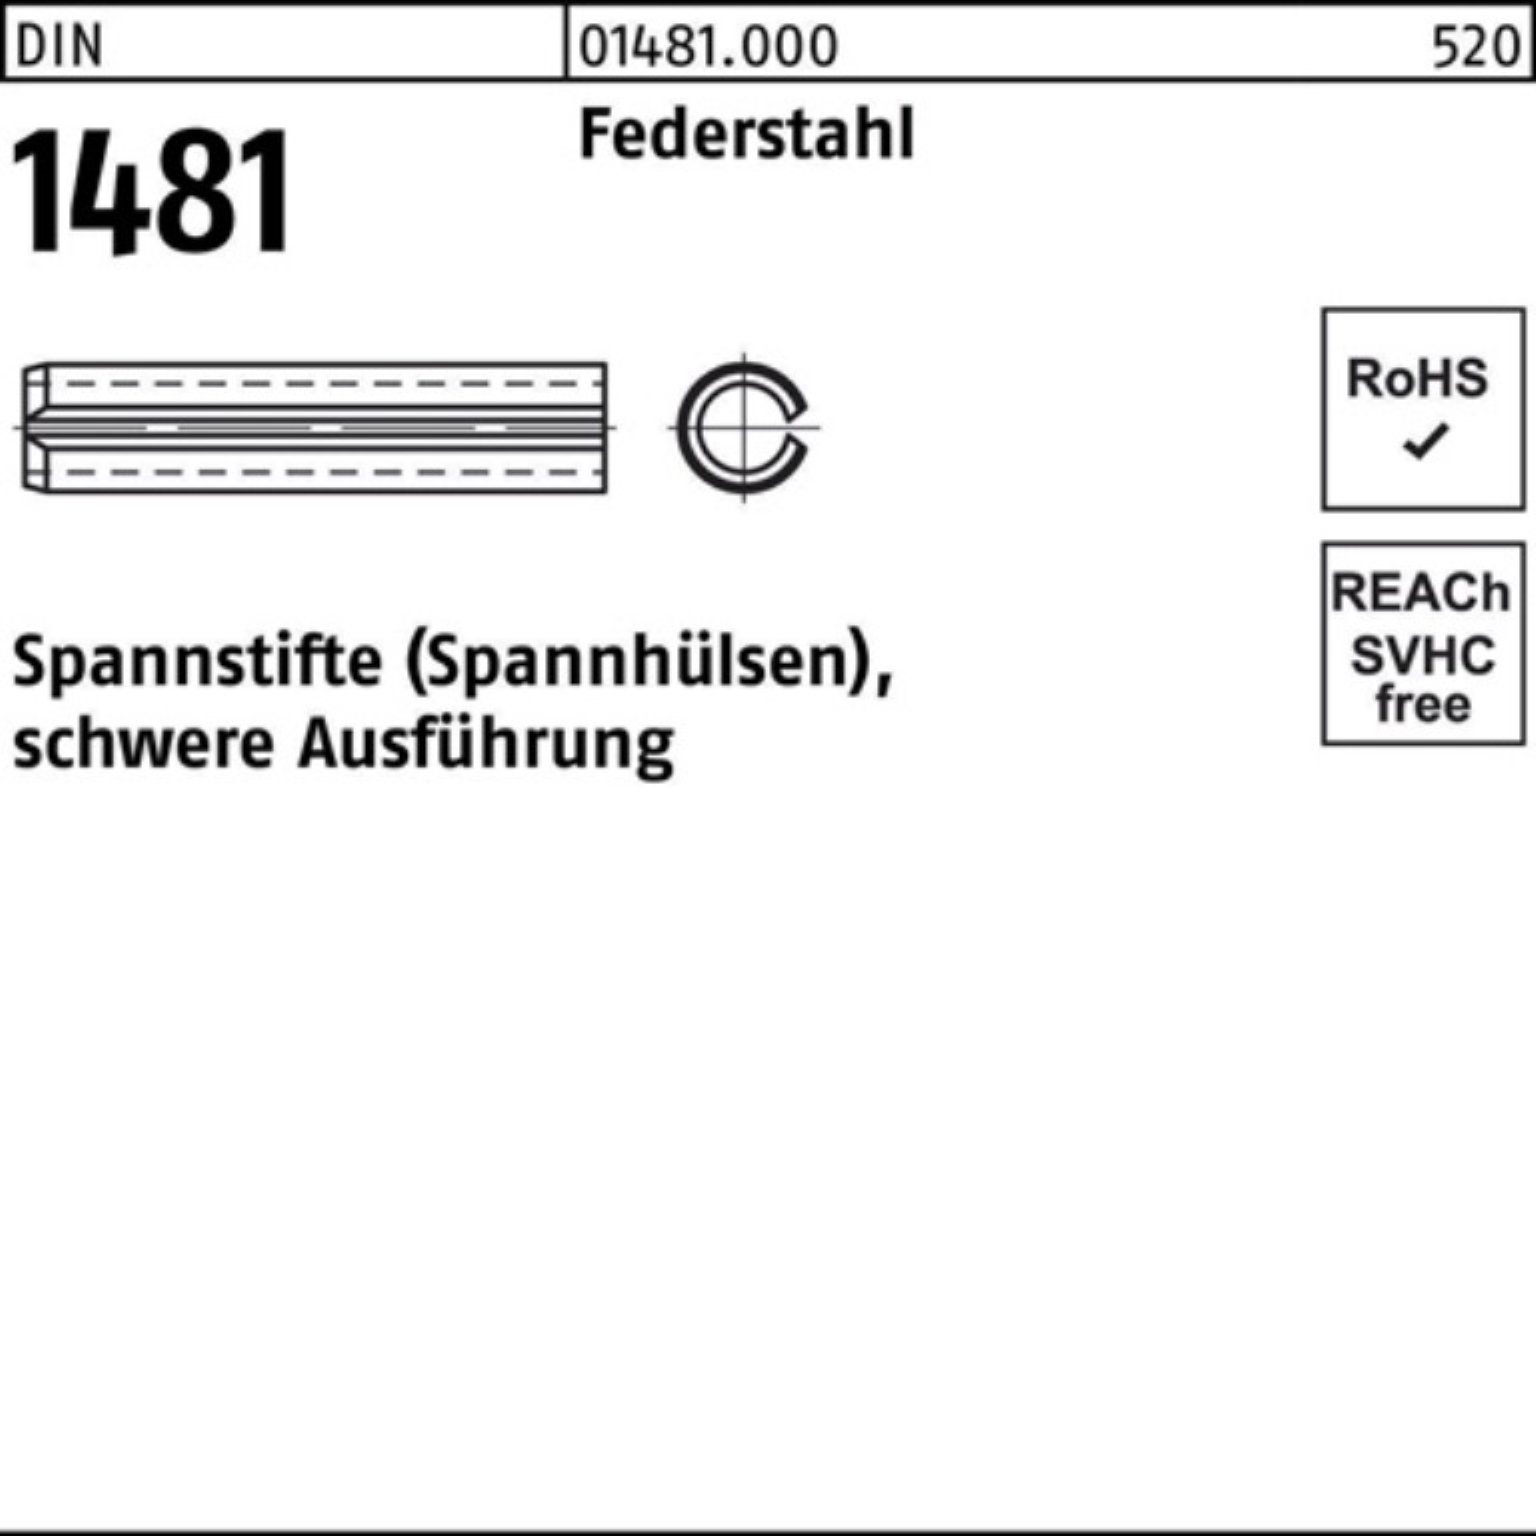 Reyher Spannstift 100er Pack Spannstift 1481 DIN Ausführung schwere Federstahl 28x 160